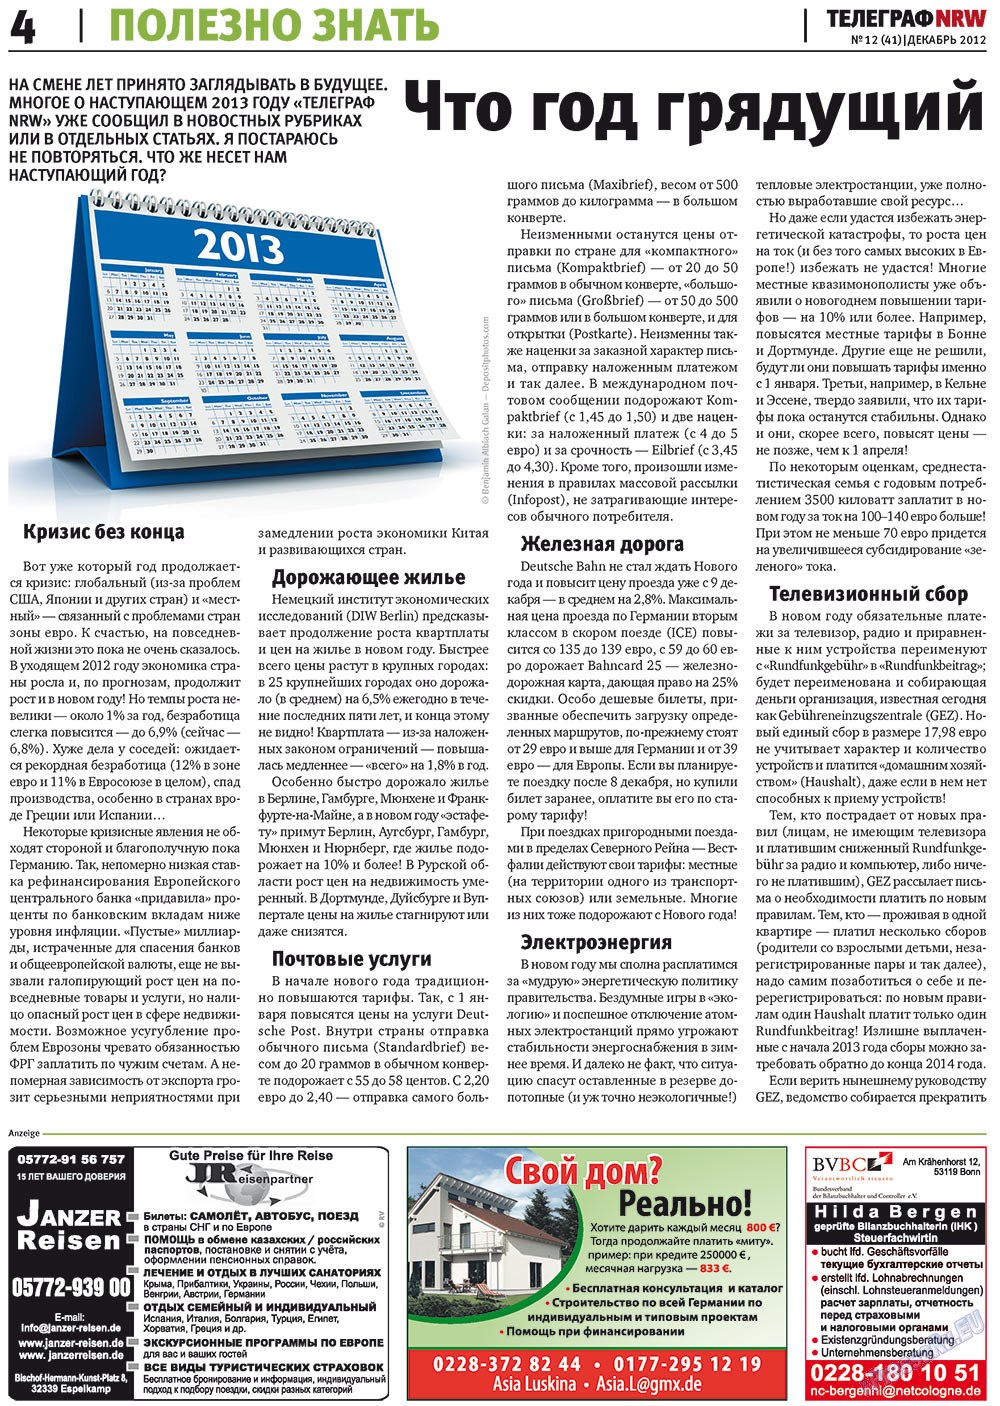 Телеграф NRW (газета). 2012 год, номер 12, стр. 4